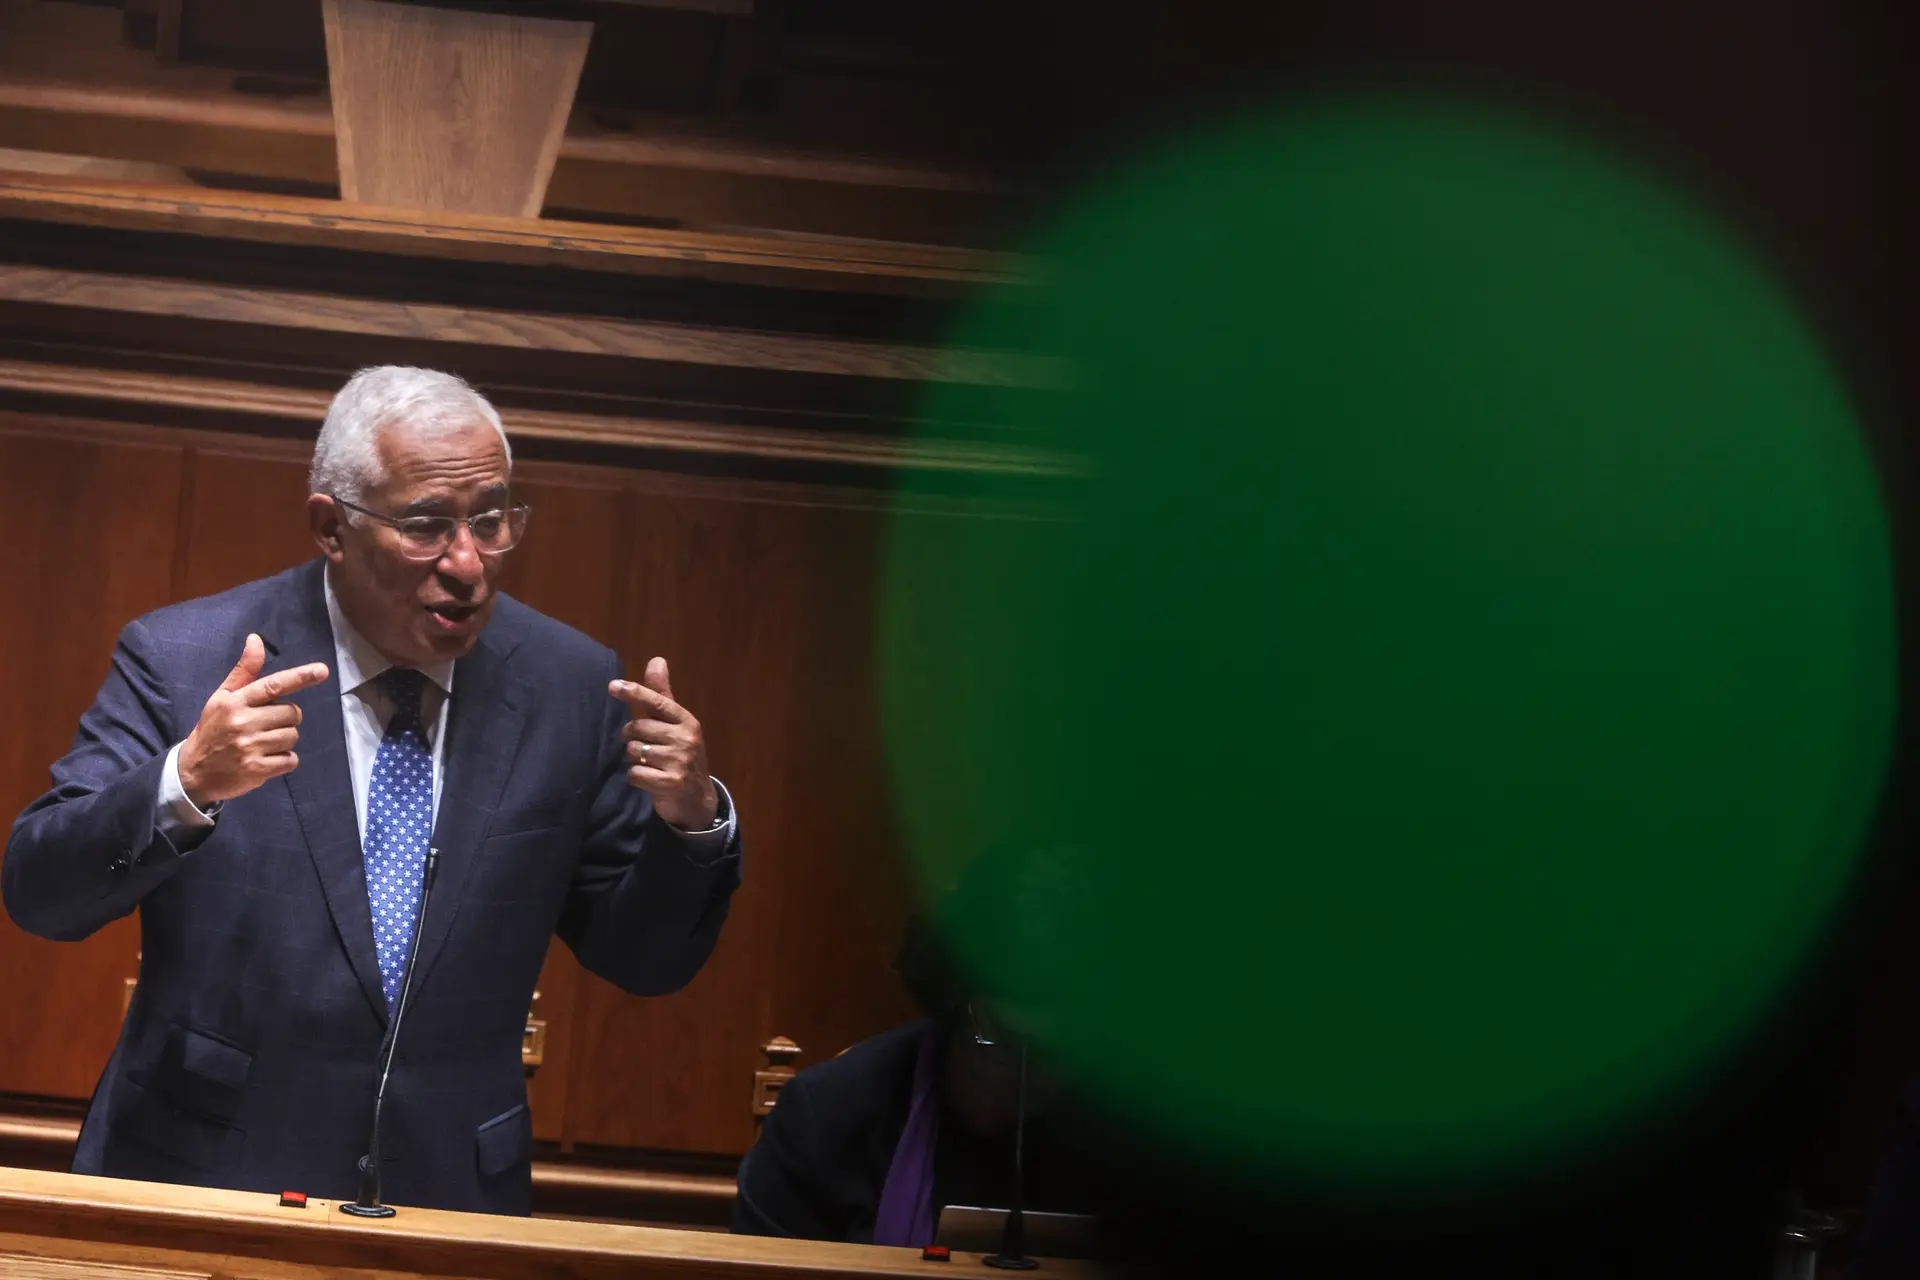 Um “otimista” entra no Parlamento: no meio da escalada da oposição, Costa tenta responder aos casos com dados económicos